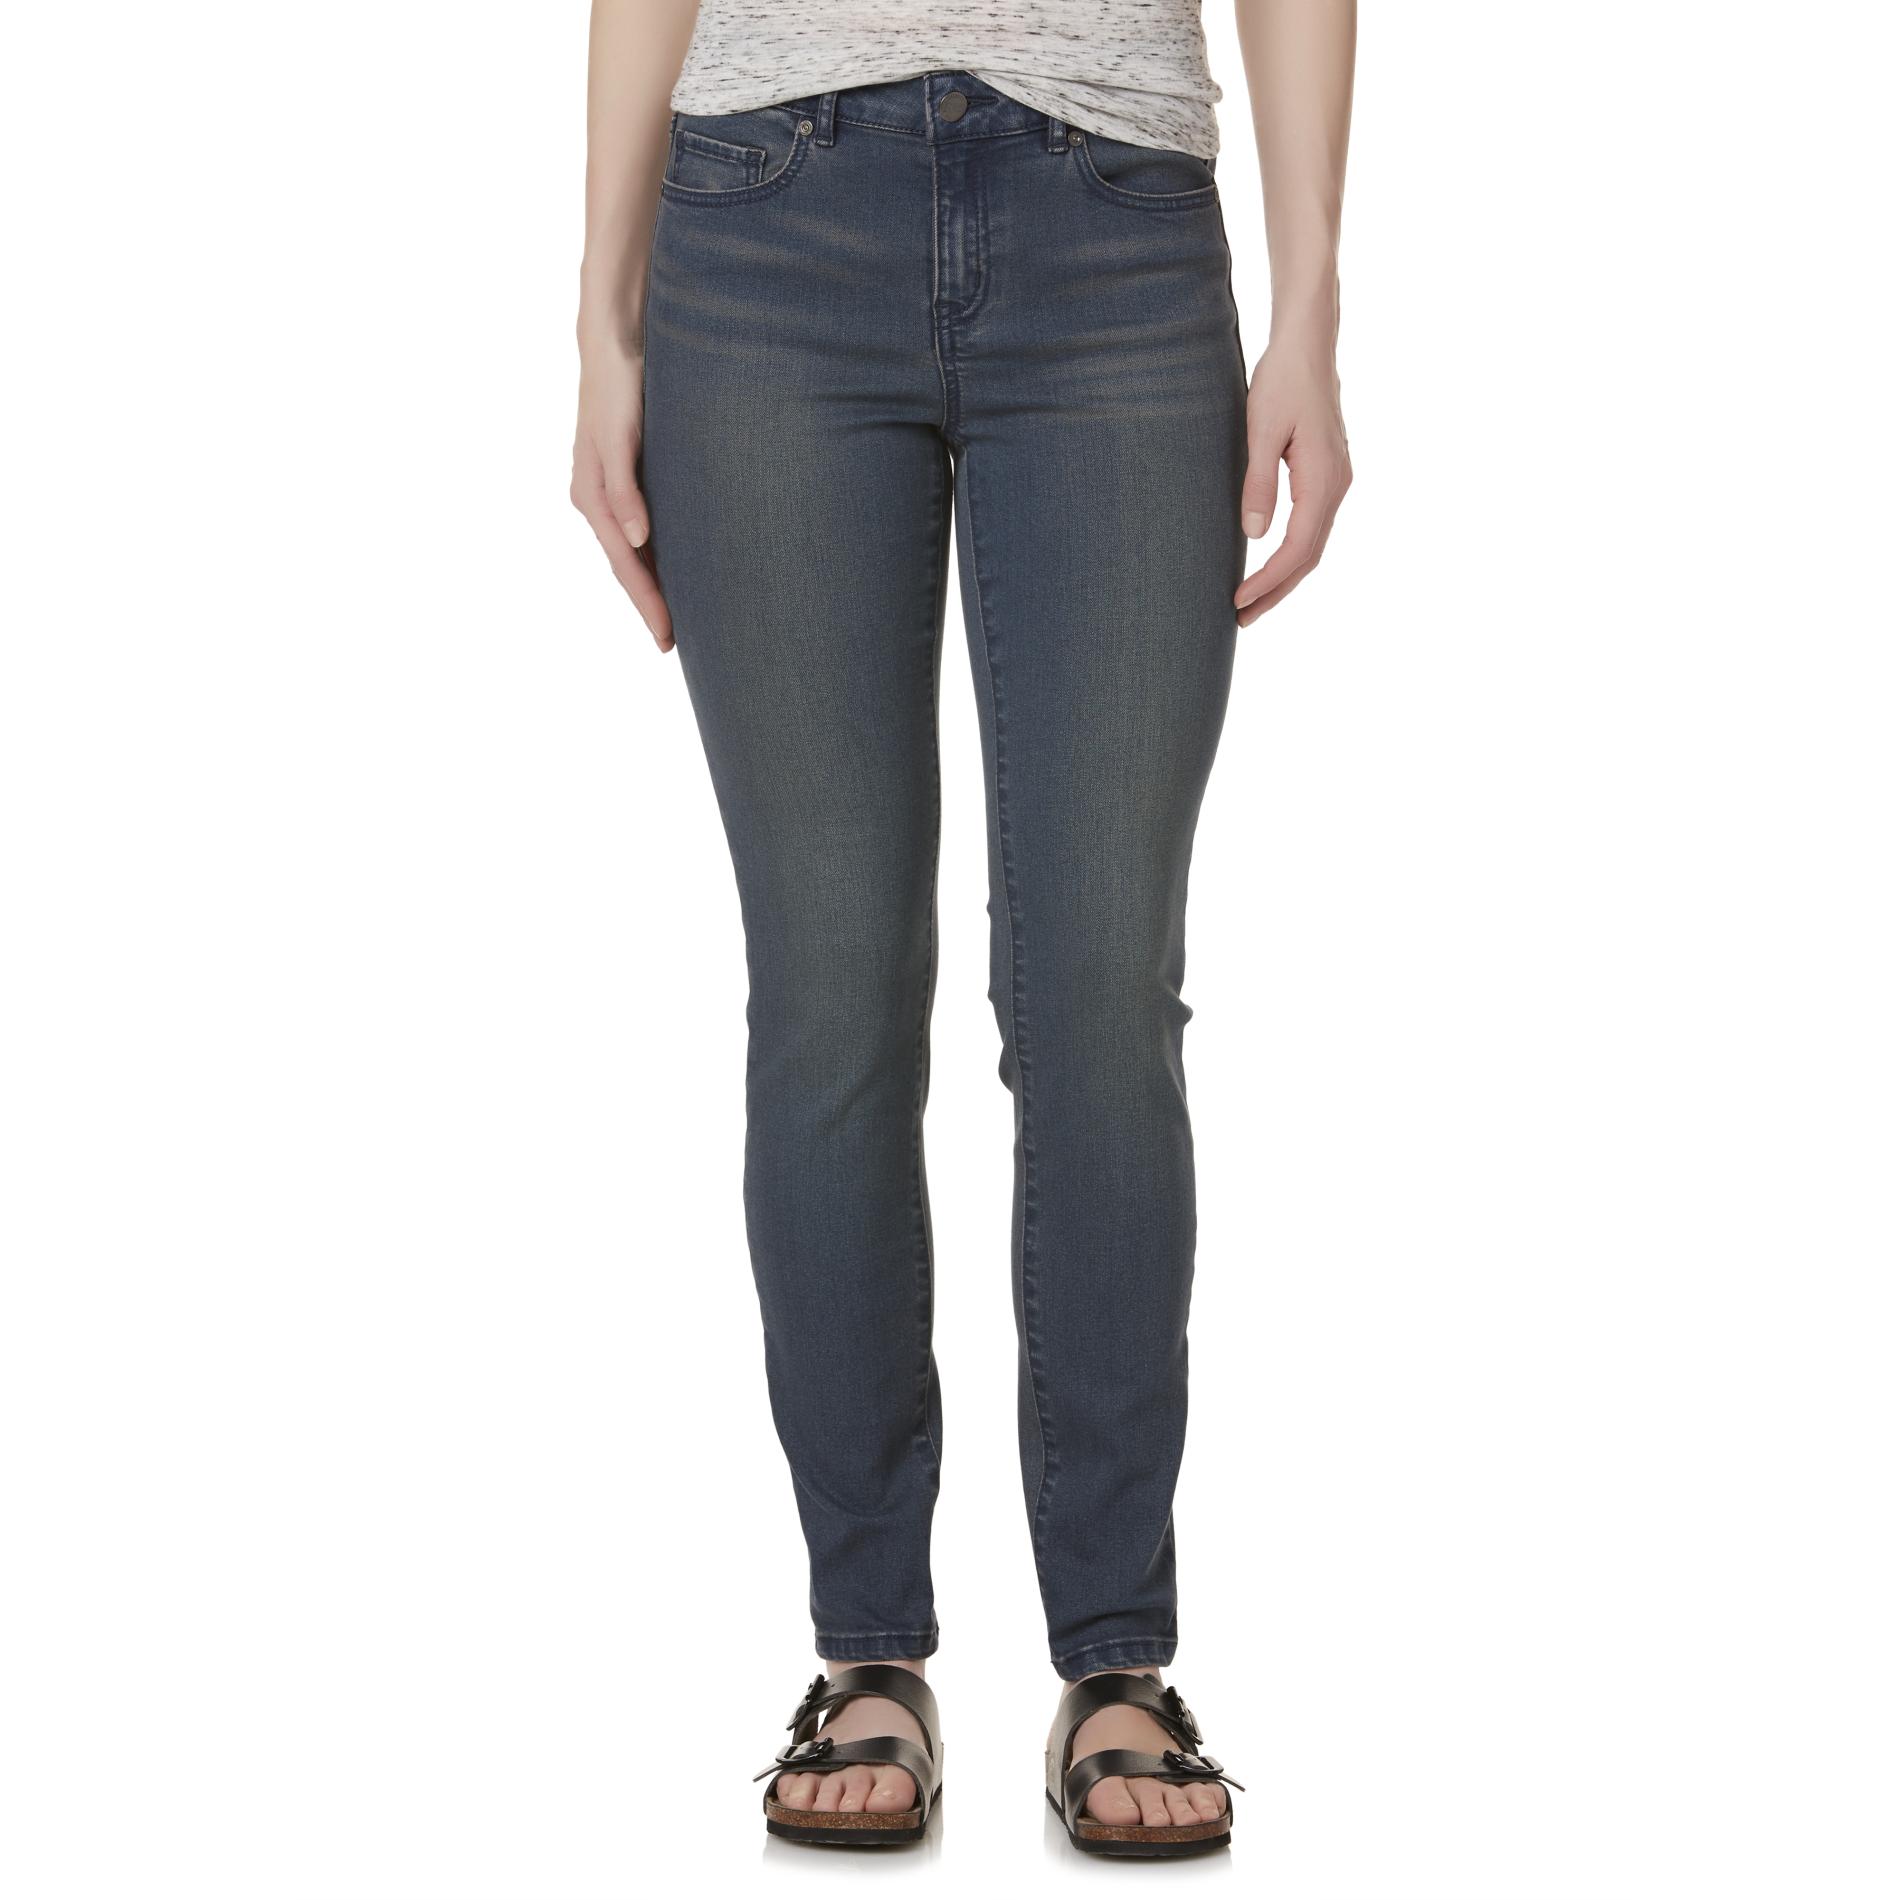 R1893 Women's Skinny Jeans